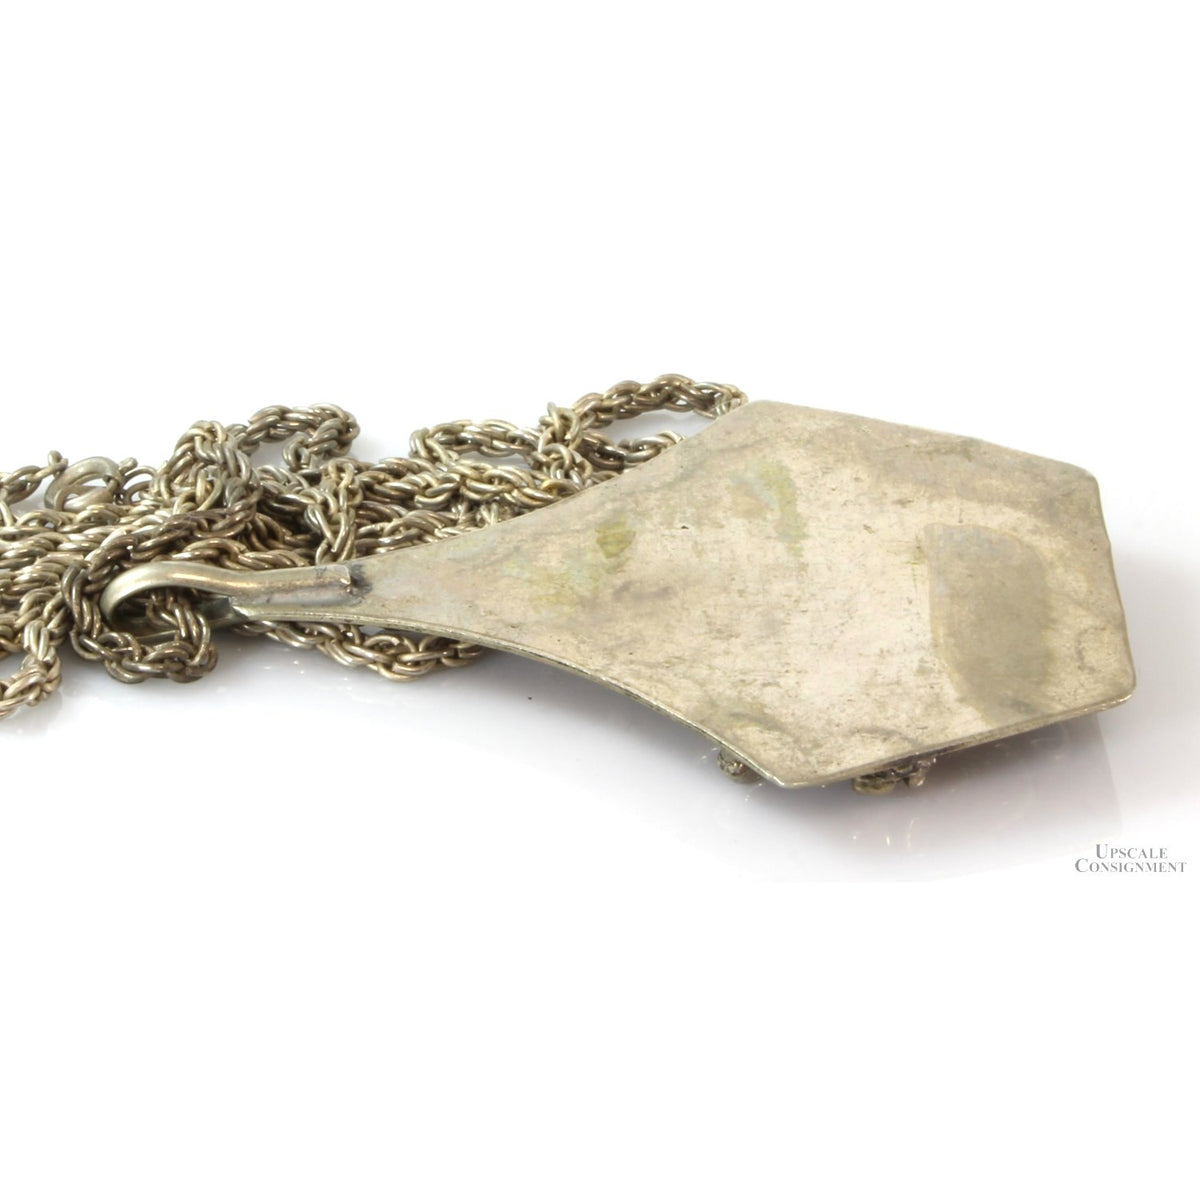 Vintage Sterling Silver Black Onyx Elk Pendant Necklace